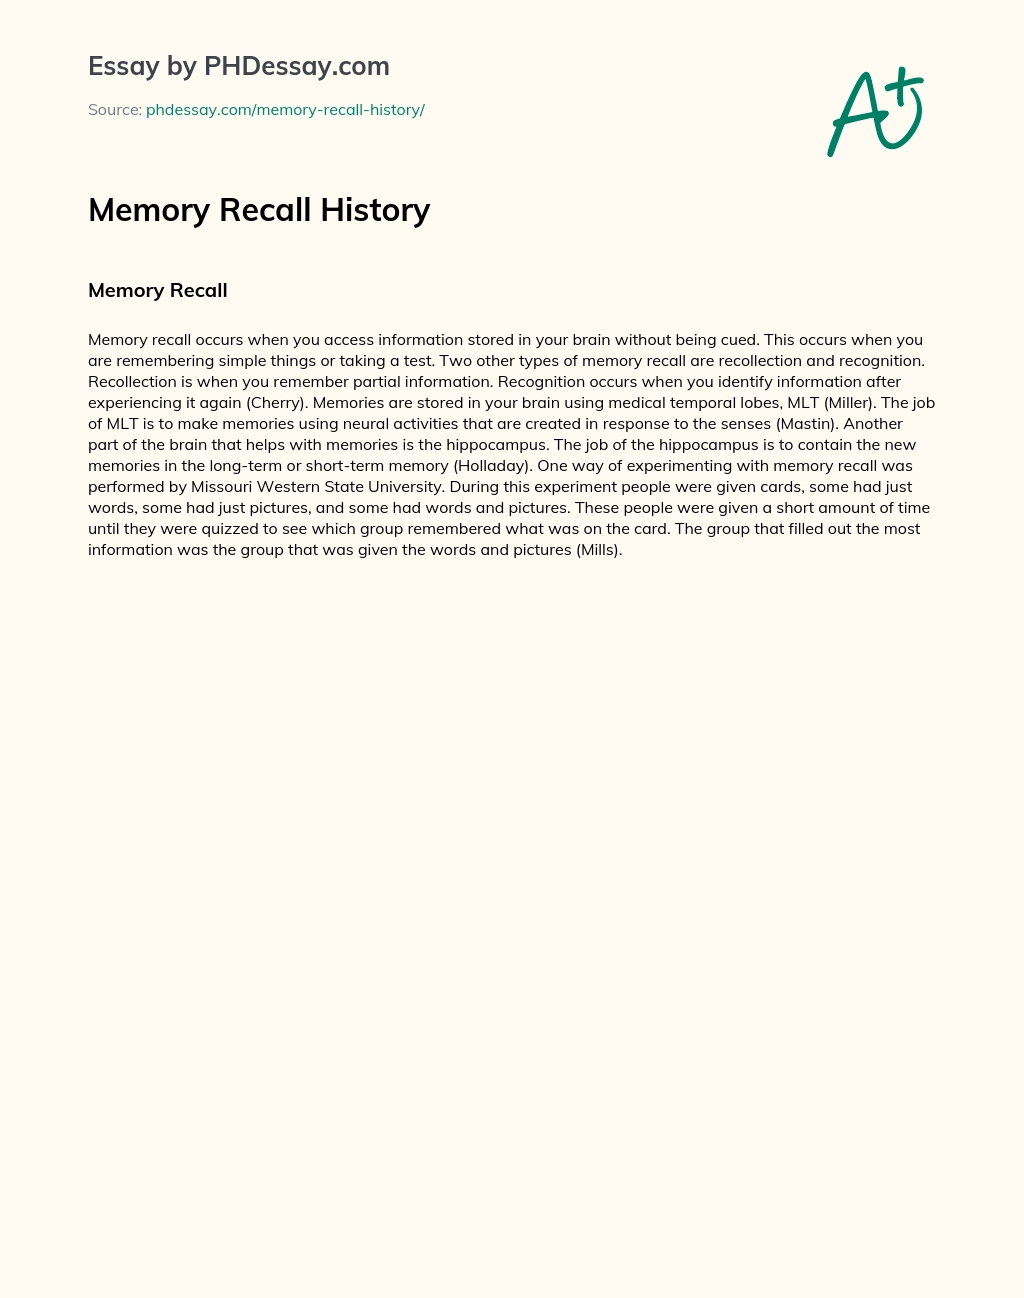 Memory Recall History essay